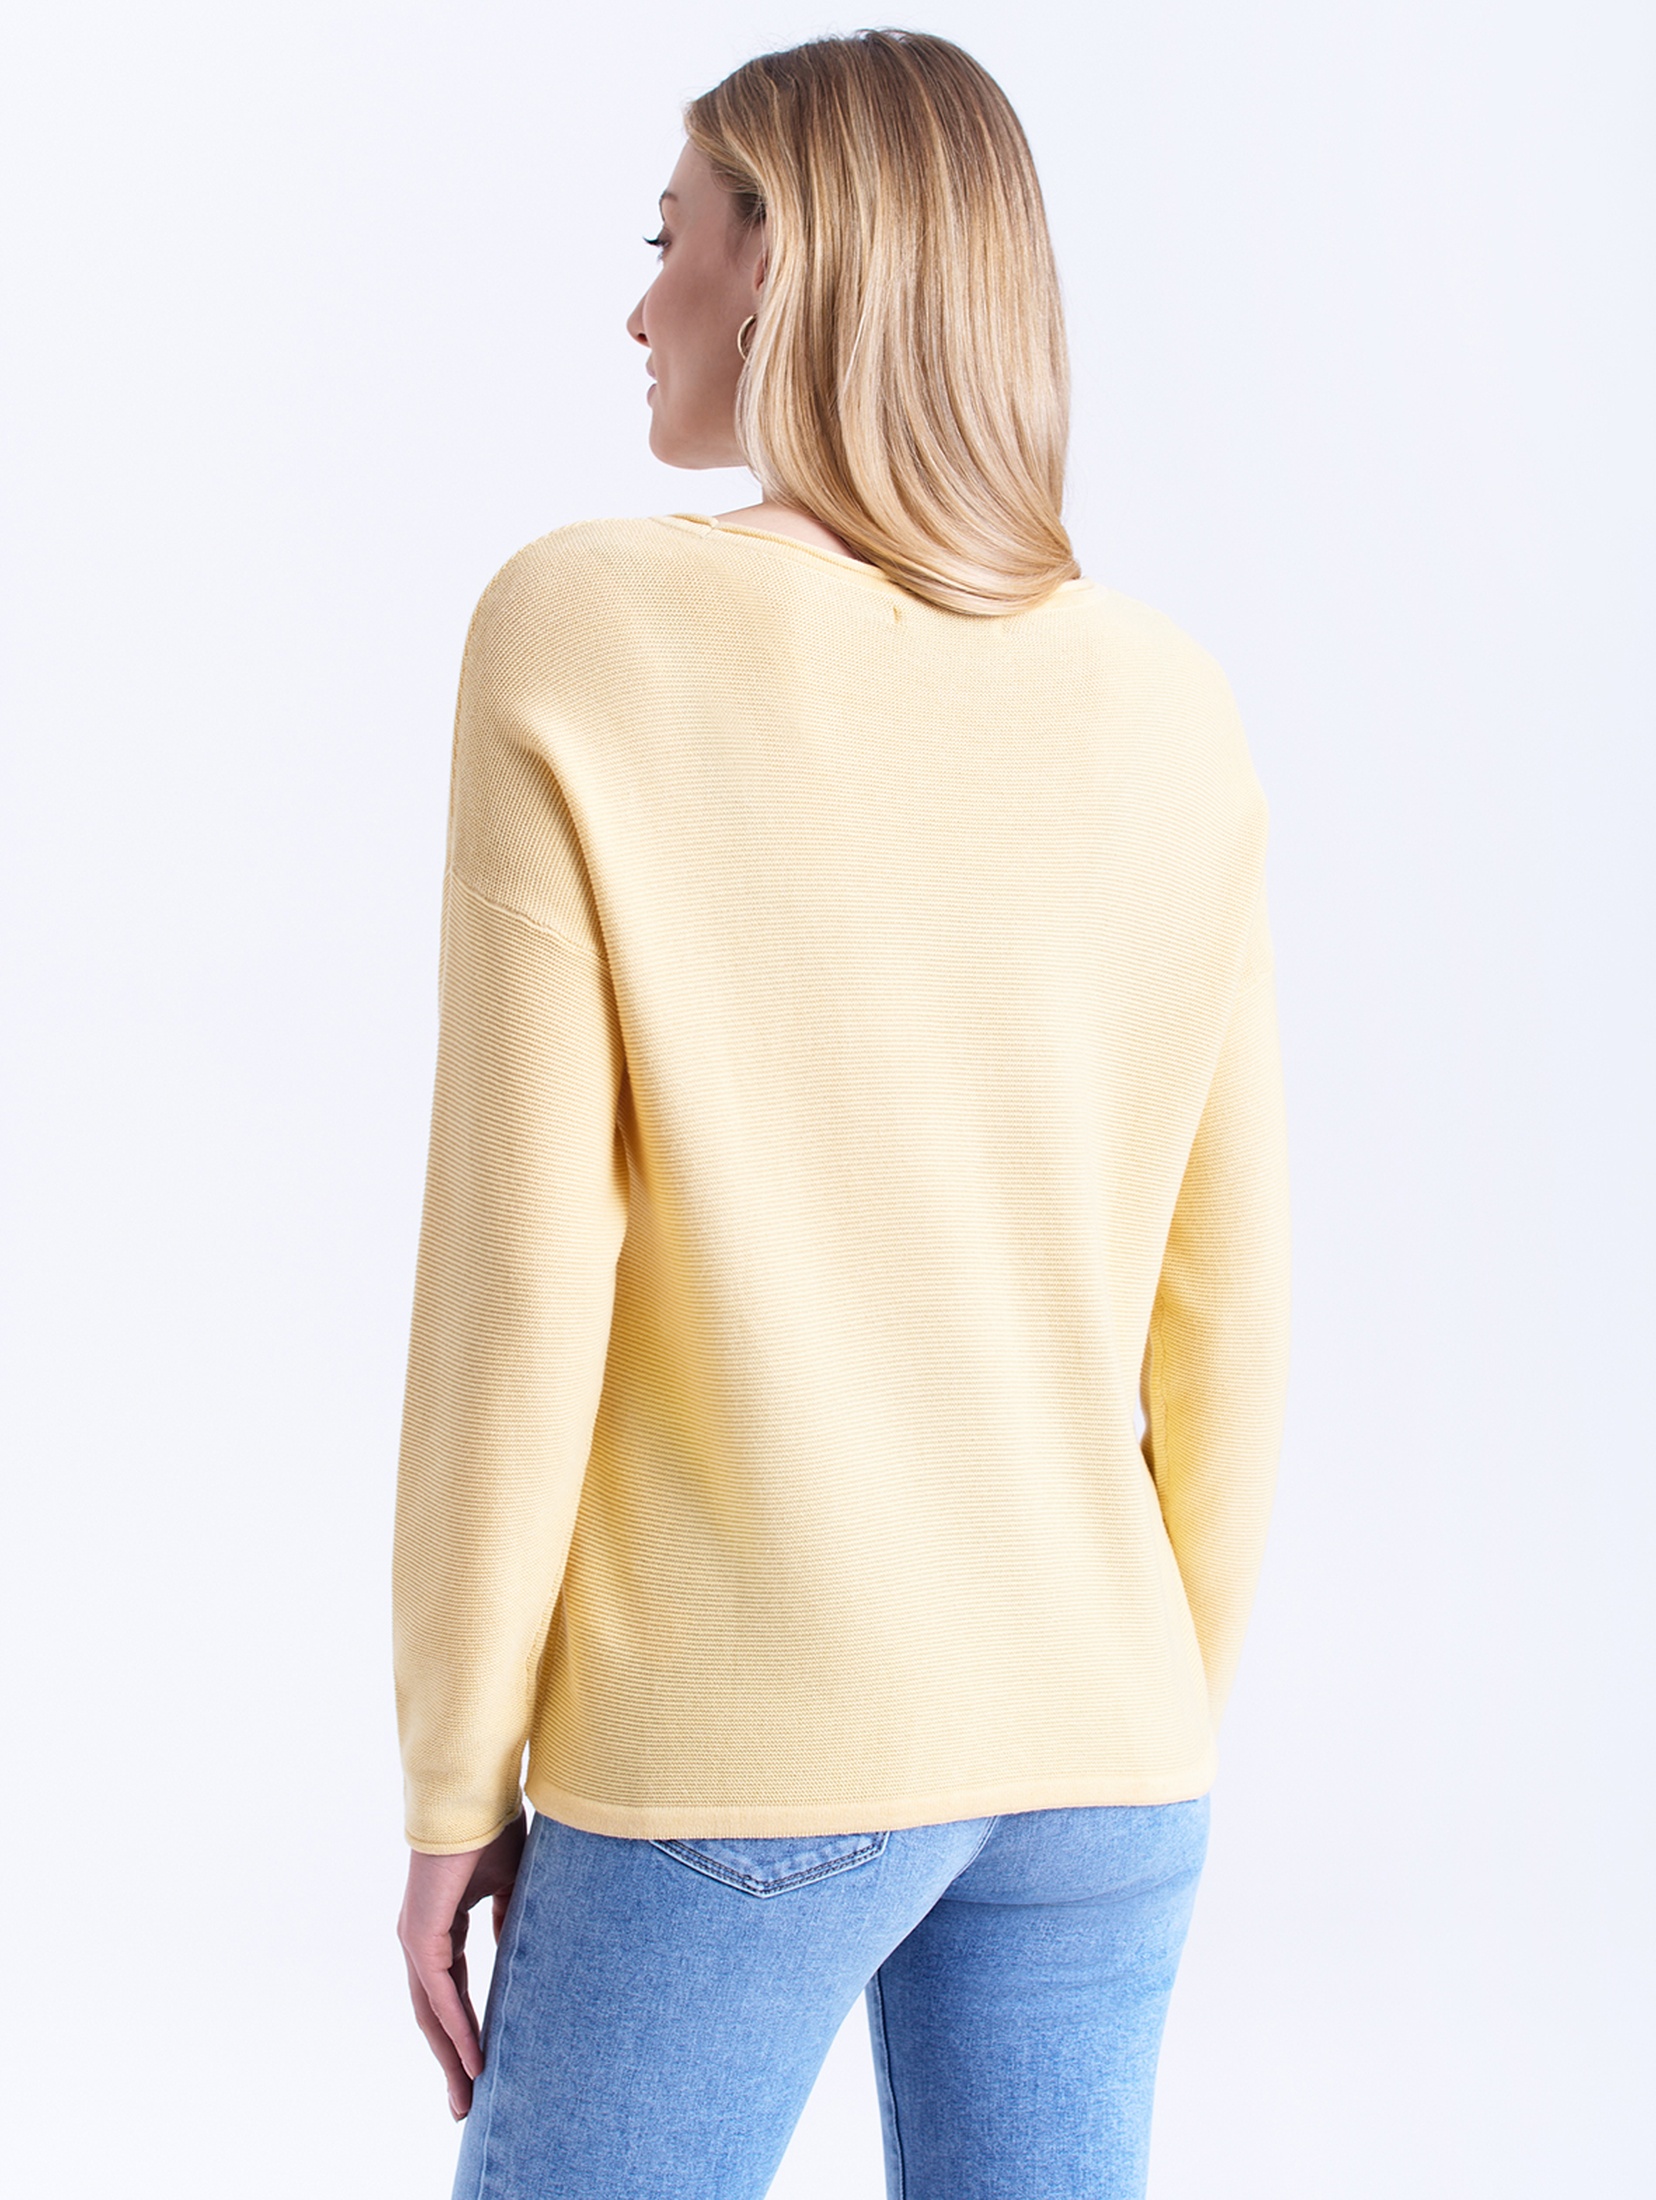 Sweter damski z troczkiem na dole i opuszczonym rękawem żółty